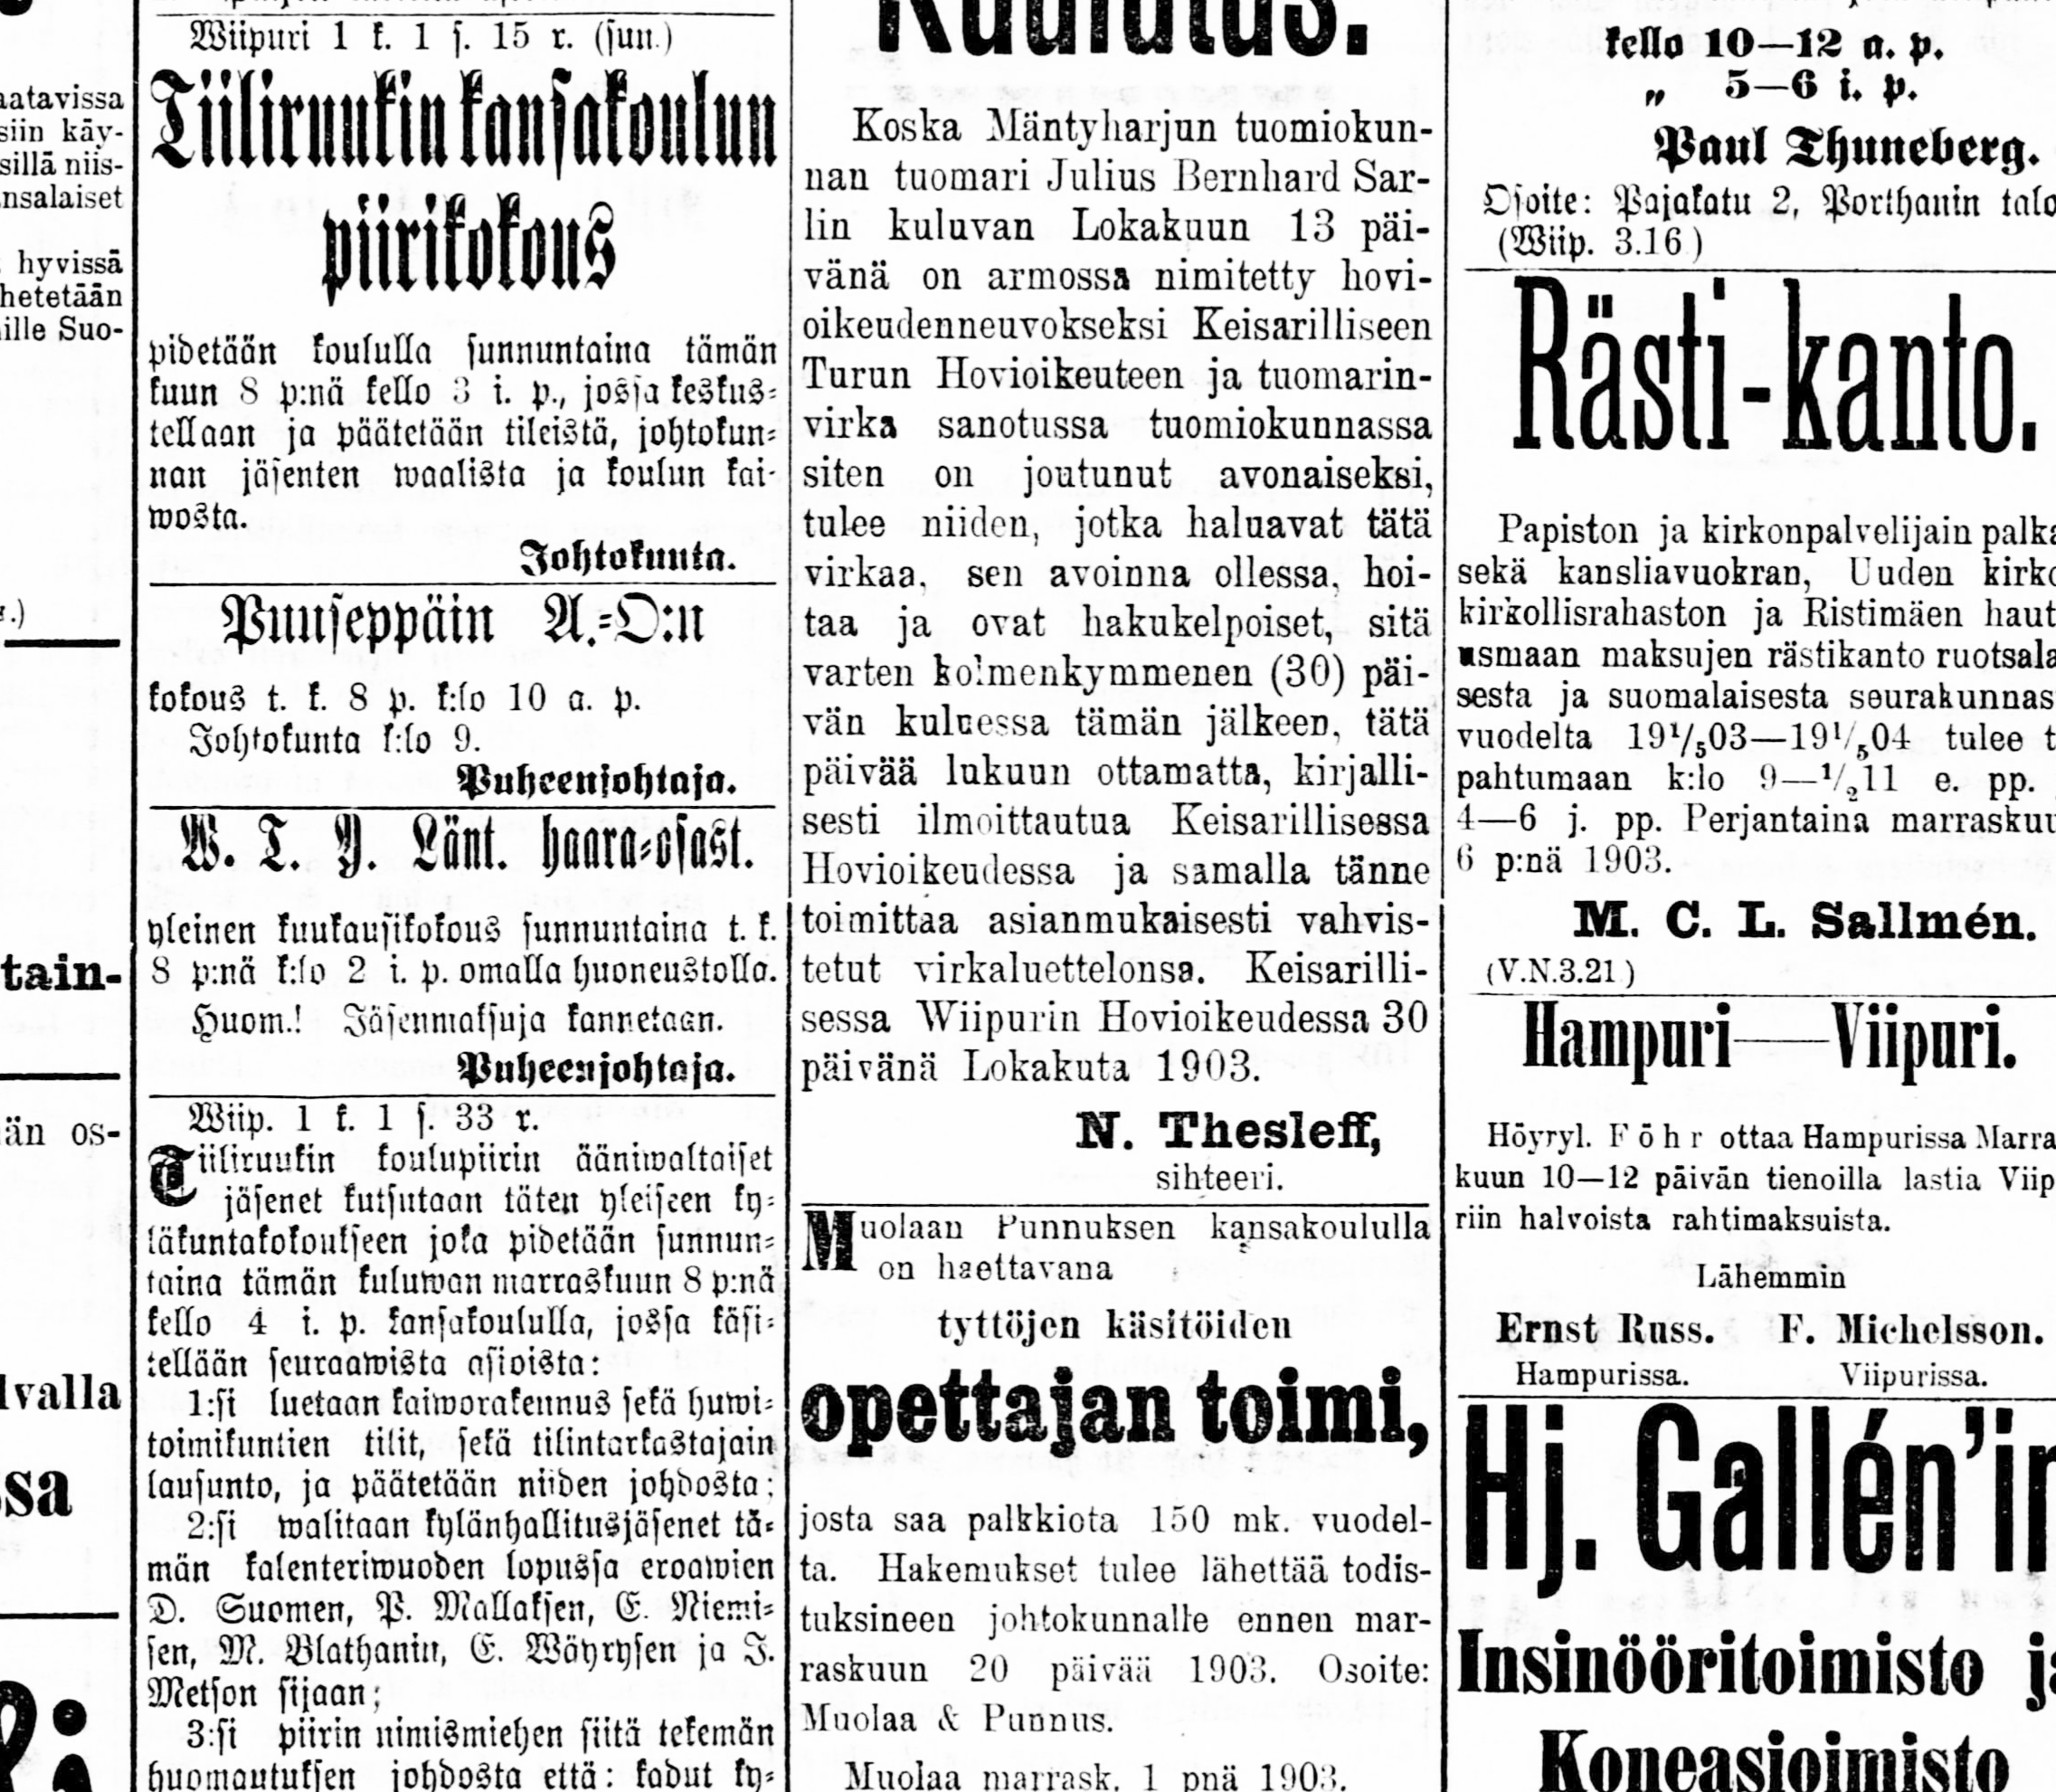 12 ERIKKILA OY De första 100 åren Verkställande direktör Toivo Erikkilä Född 9.10.1887 i Brahestad. Föräldrar: tullförman Matti August Erikkilä och Hilda Maria född Ravander.